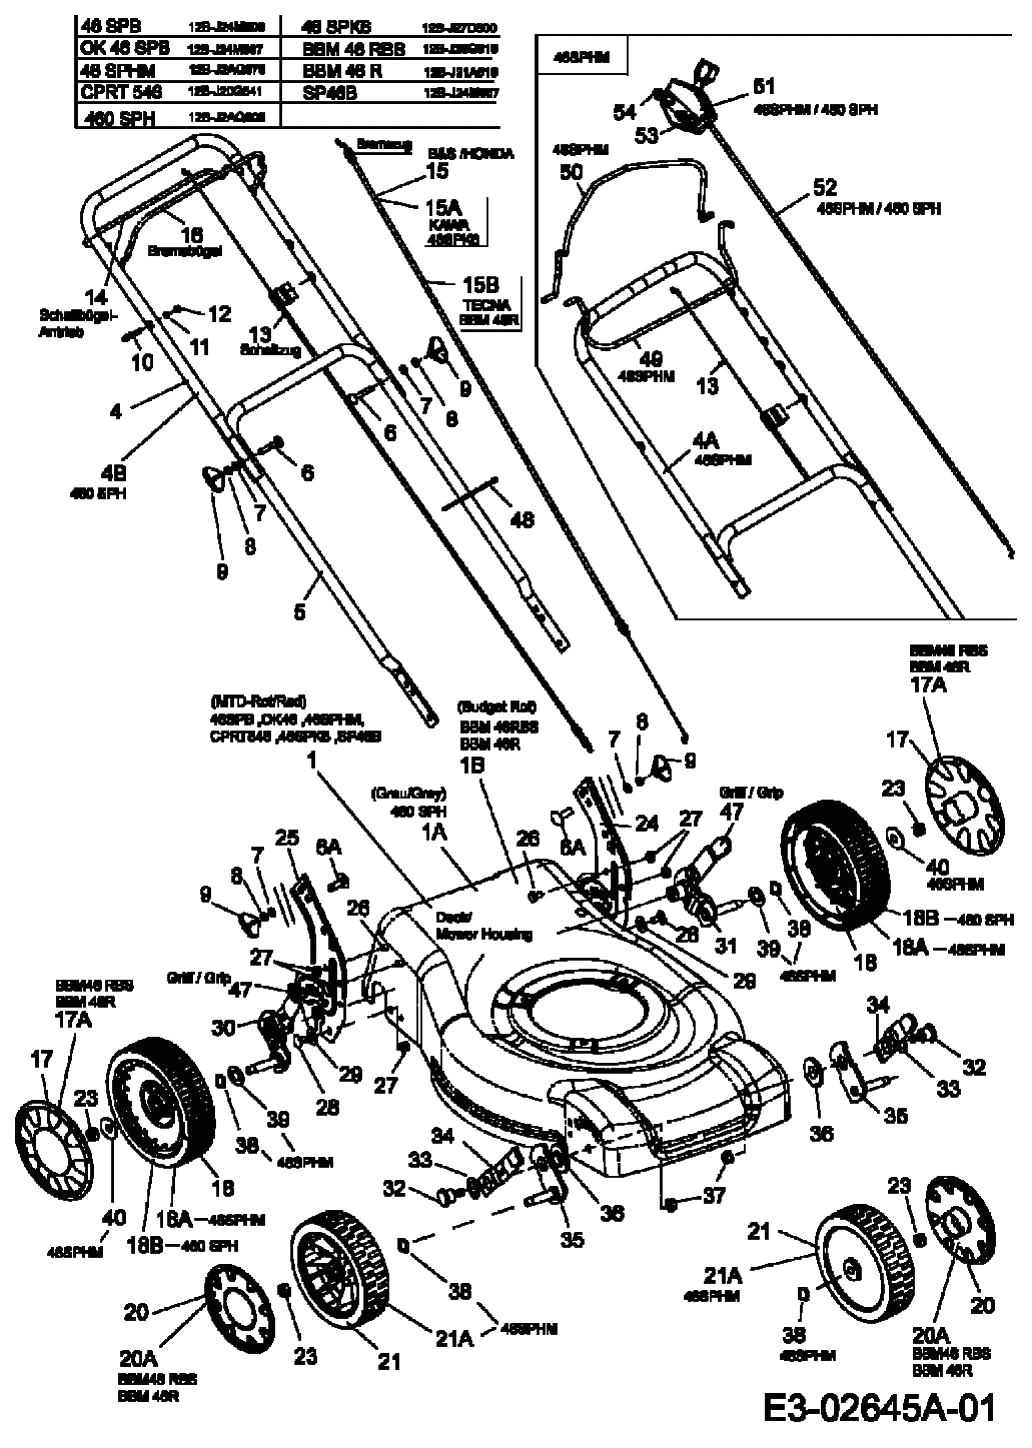 MTD Артикул 12B-J2AQ606 (год выпуска 2006). Ручка, колеса, регулятор высоты реза